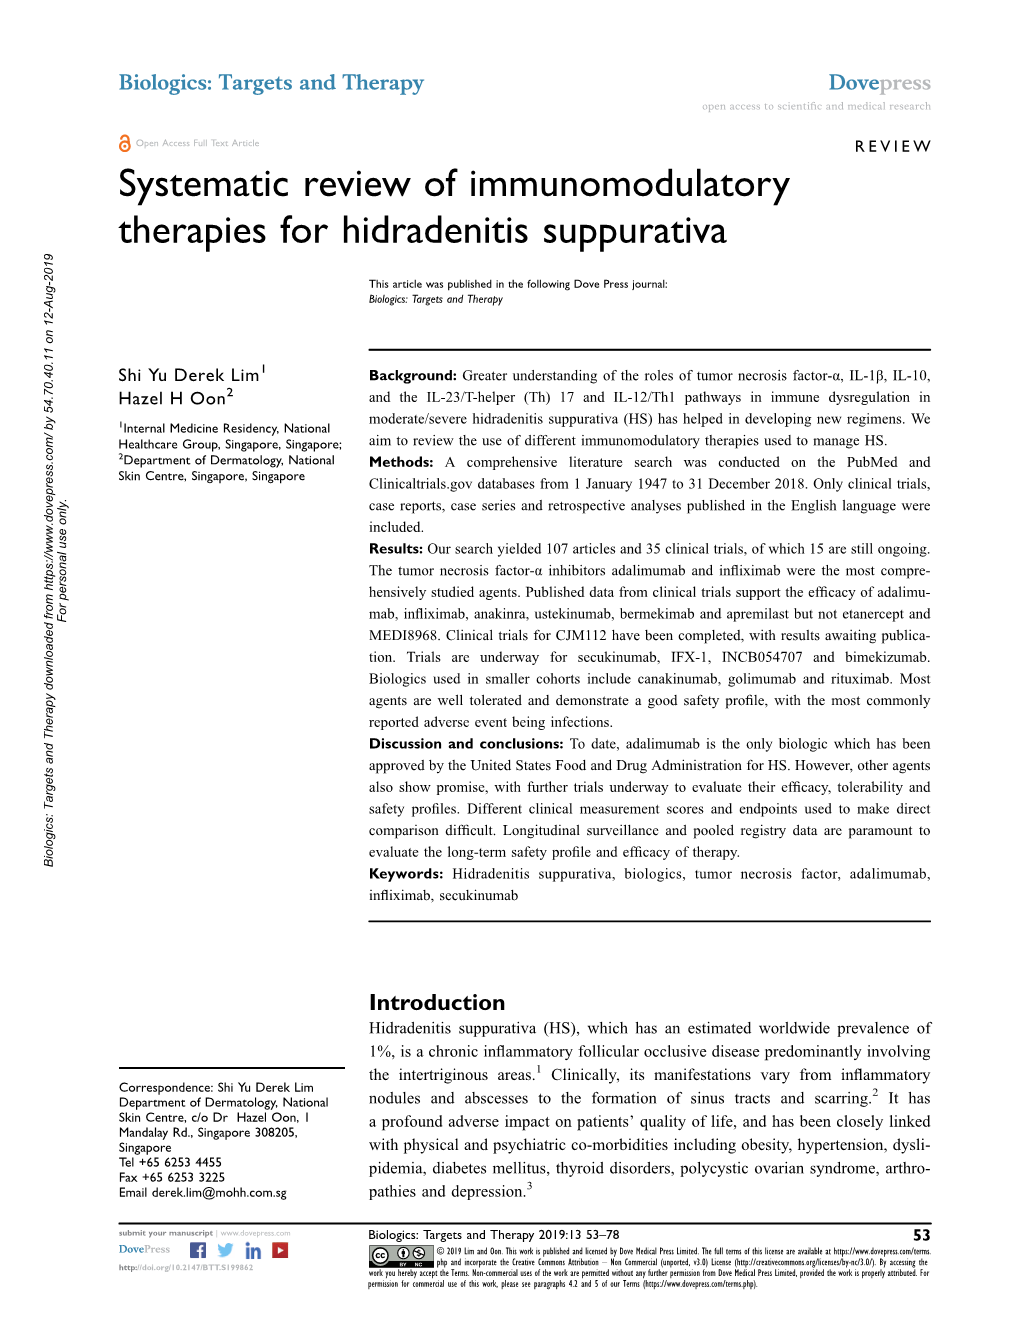 Systematic Review of Immunomodulatory Therapies for Hidradenitis Suppurativa